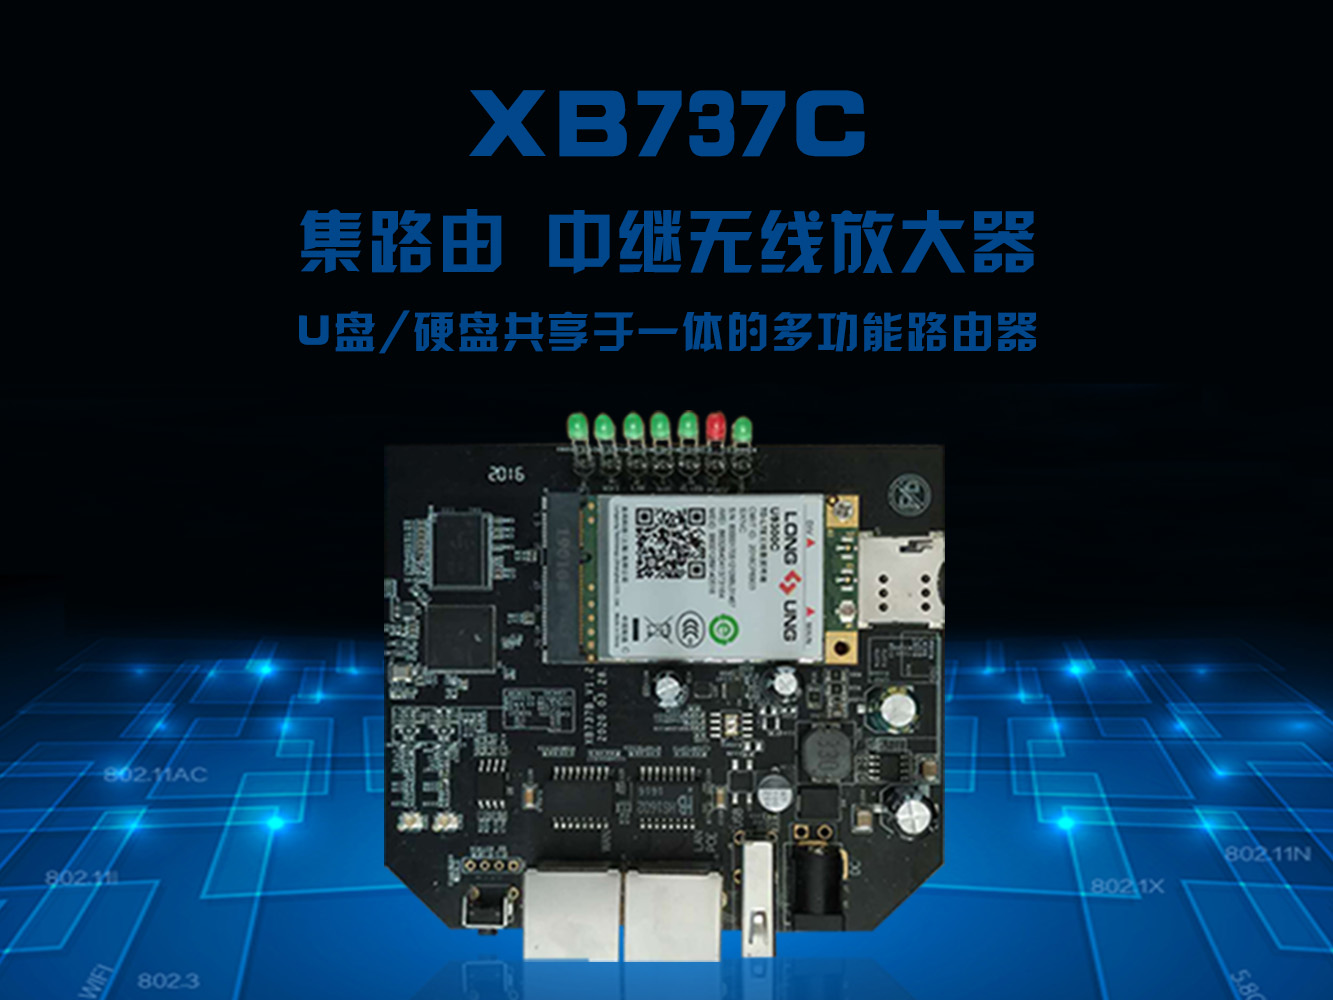 XB737C